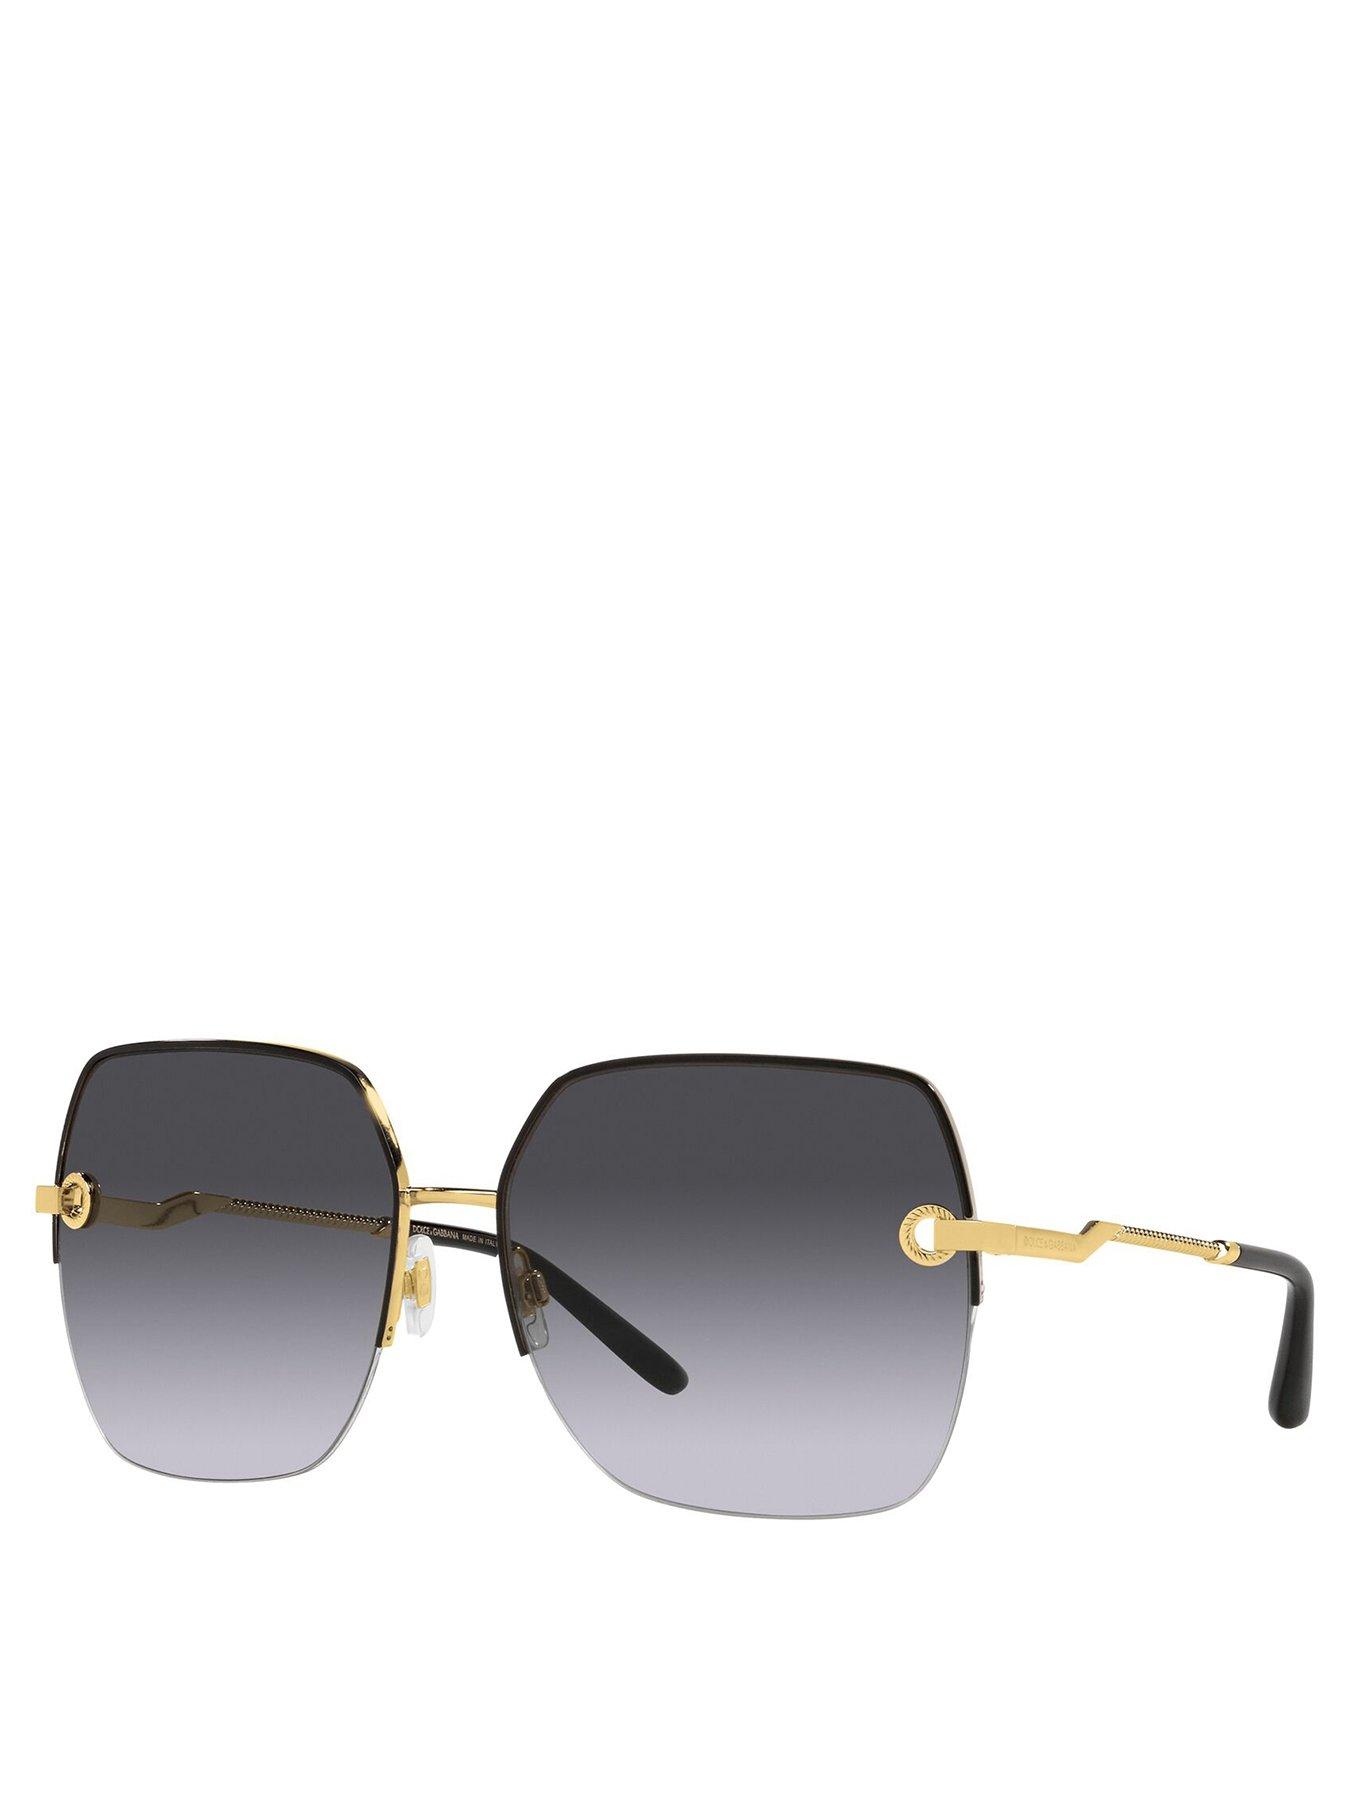 Accessories Square Sunglasses - Gold